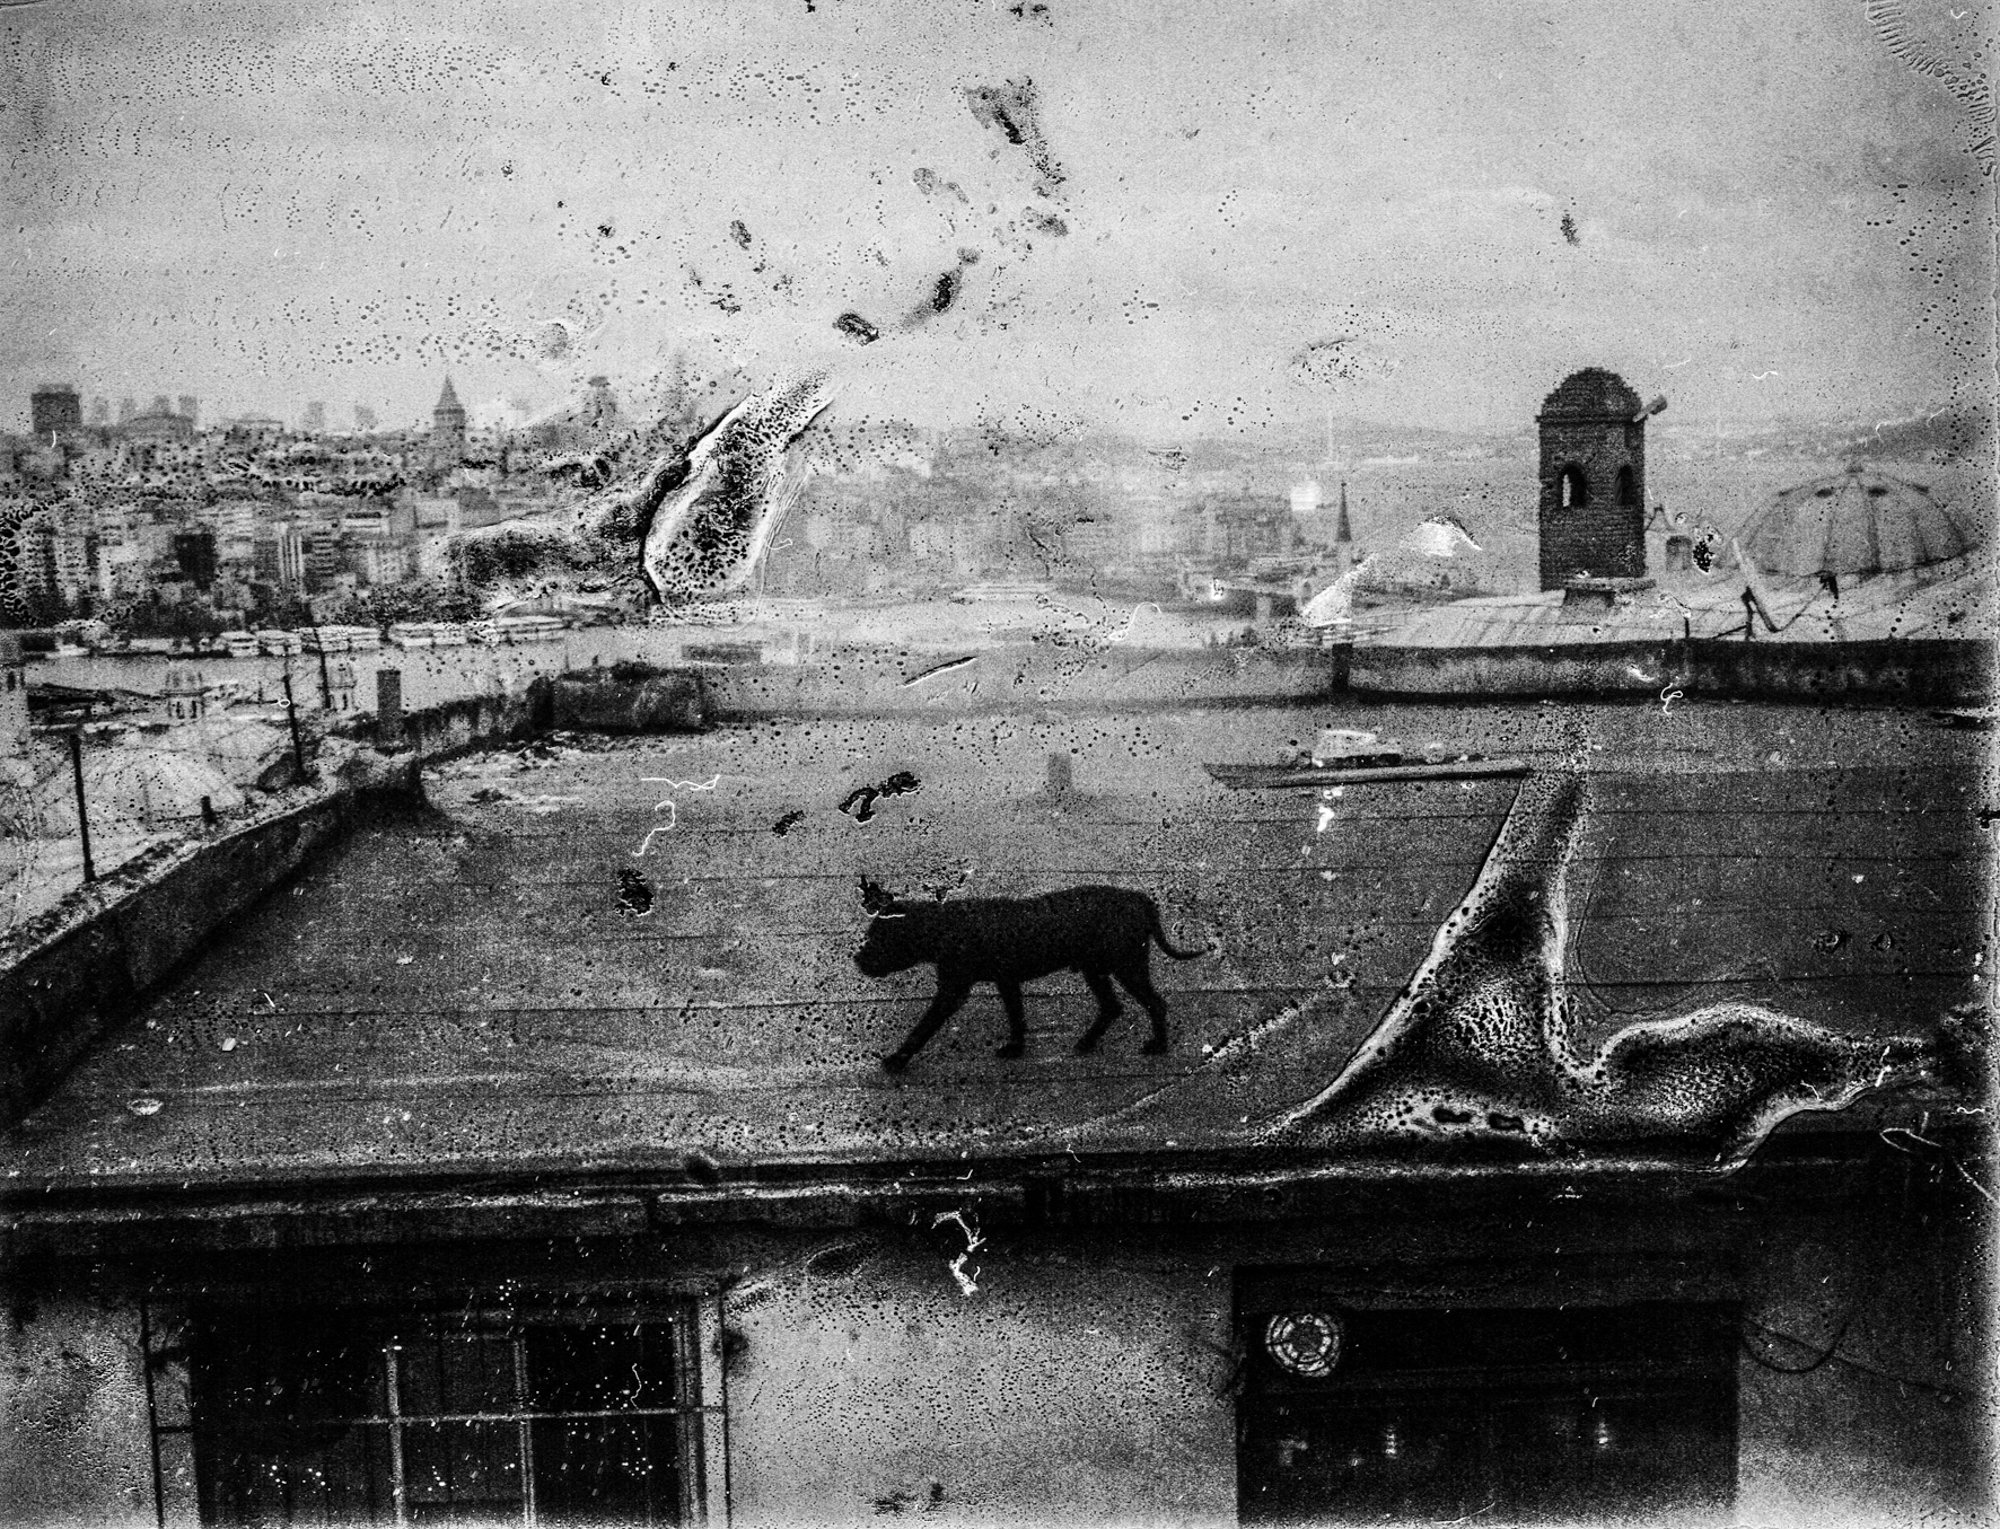 Et tag hvor der er er en hund, billedet er falmet og ødelagt, taget af Esa Ylijaasko